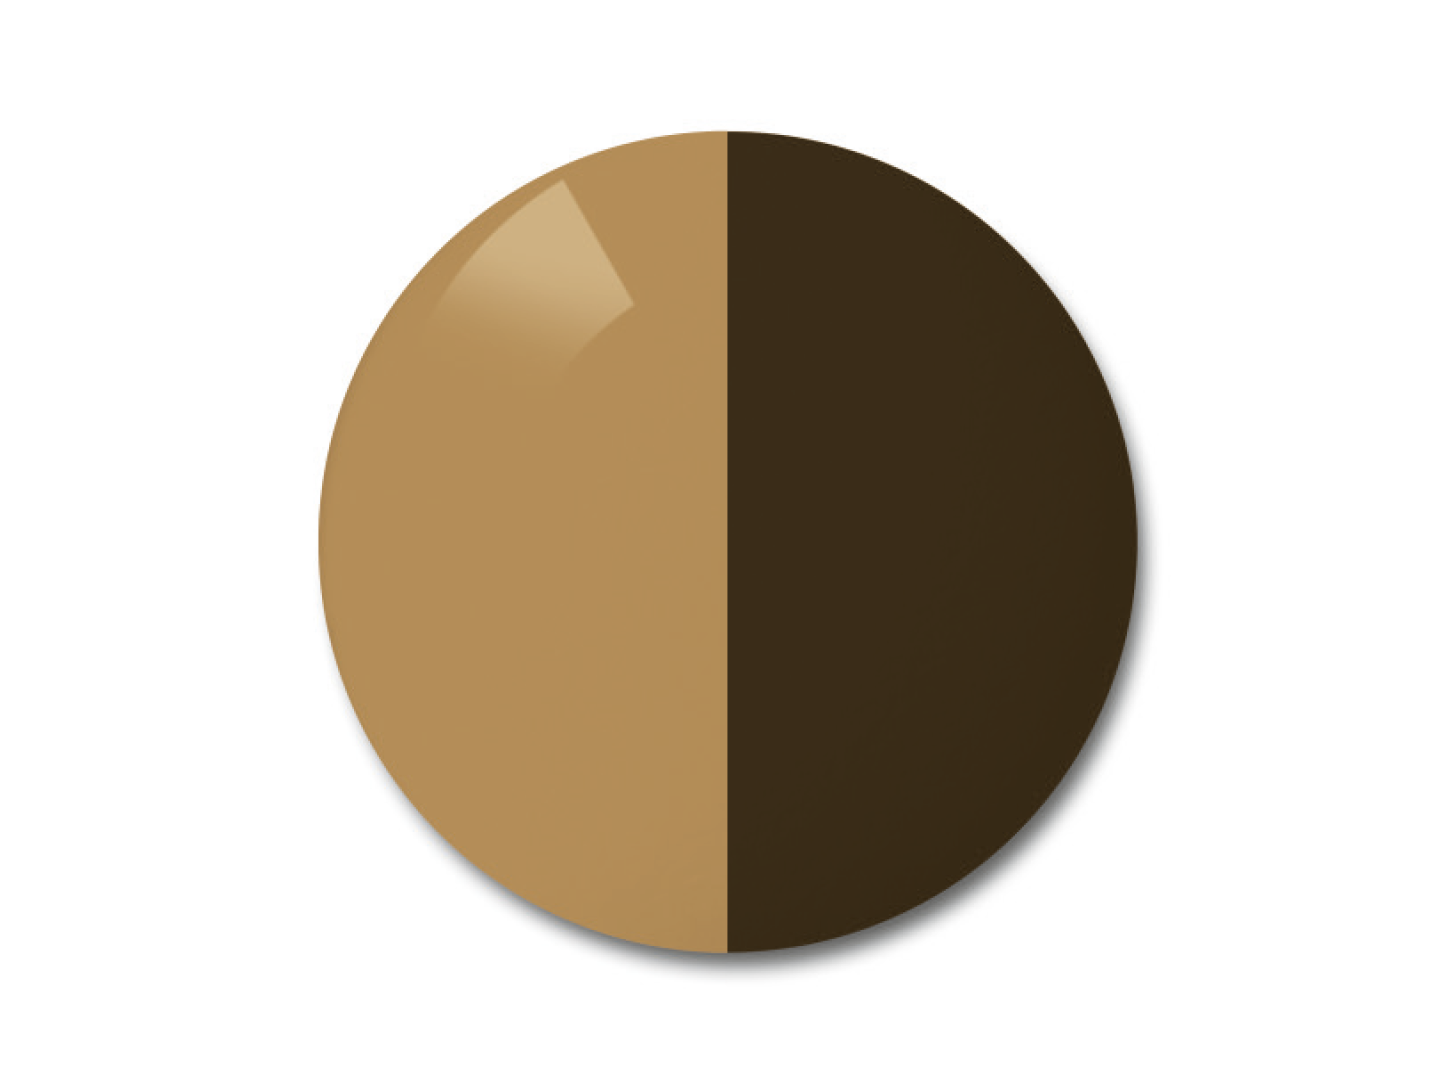 자이스 어댑티브선 변색 렌즈 중 단색 브라운 색상을 보여주는 이미지